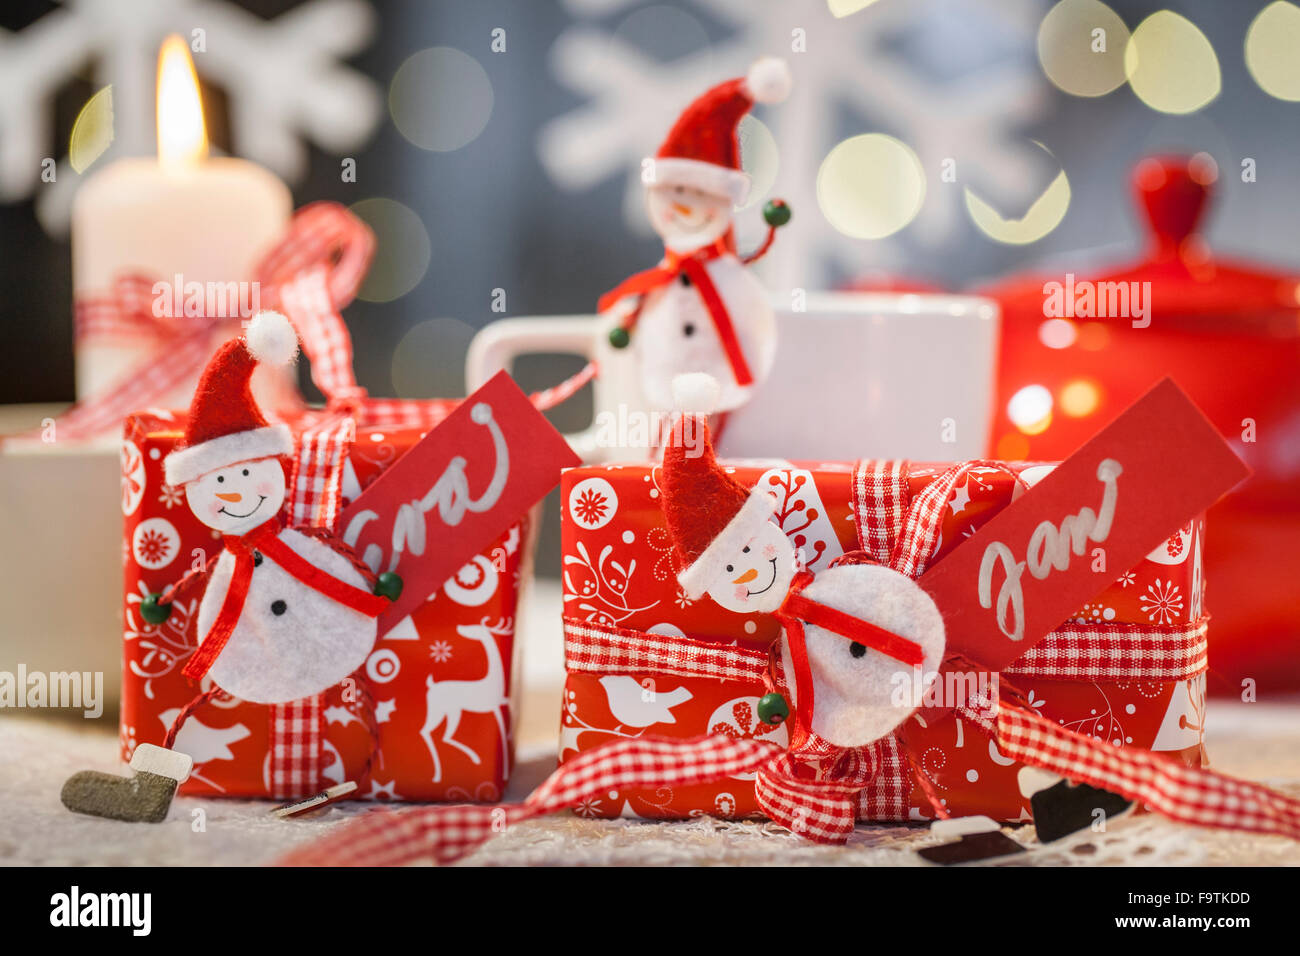 Material: rote Geschenkpapier mit einem Weihnachts-Motiv, rot-weiße Band  aus Filz Puppen, Wäscheklammern, Papier, rot, weiße Markierung, Schere.  Vorgehensweise: eine Puppe aus Filz auf den Zapfen kleben, Geschenke in  Packpapier und Bandage Bogen